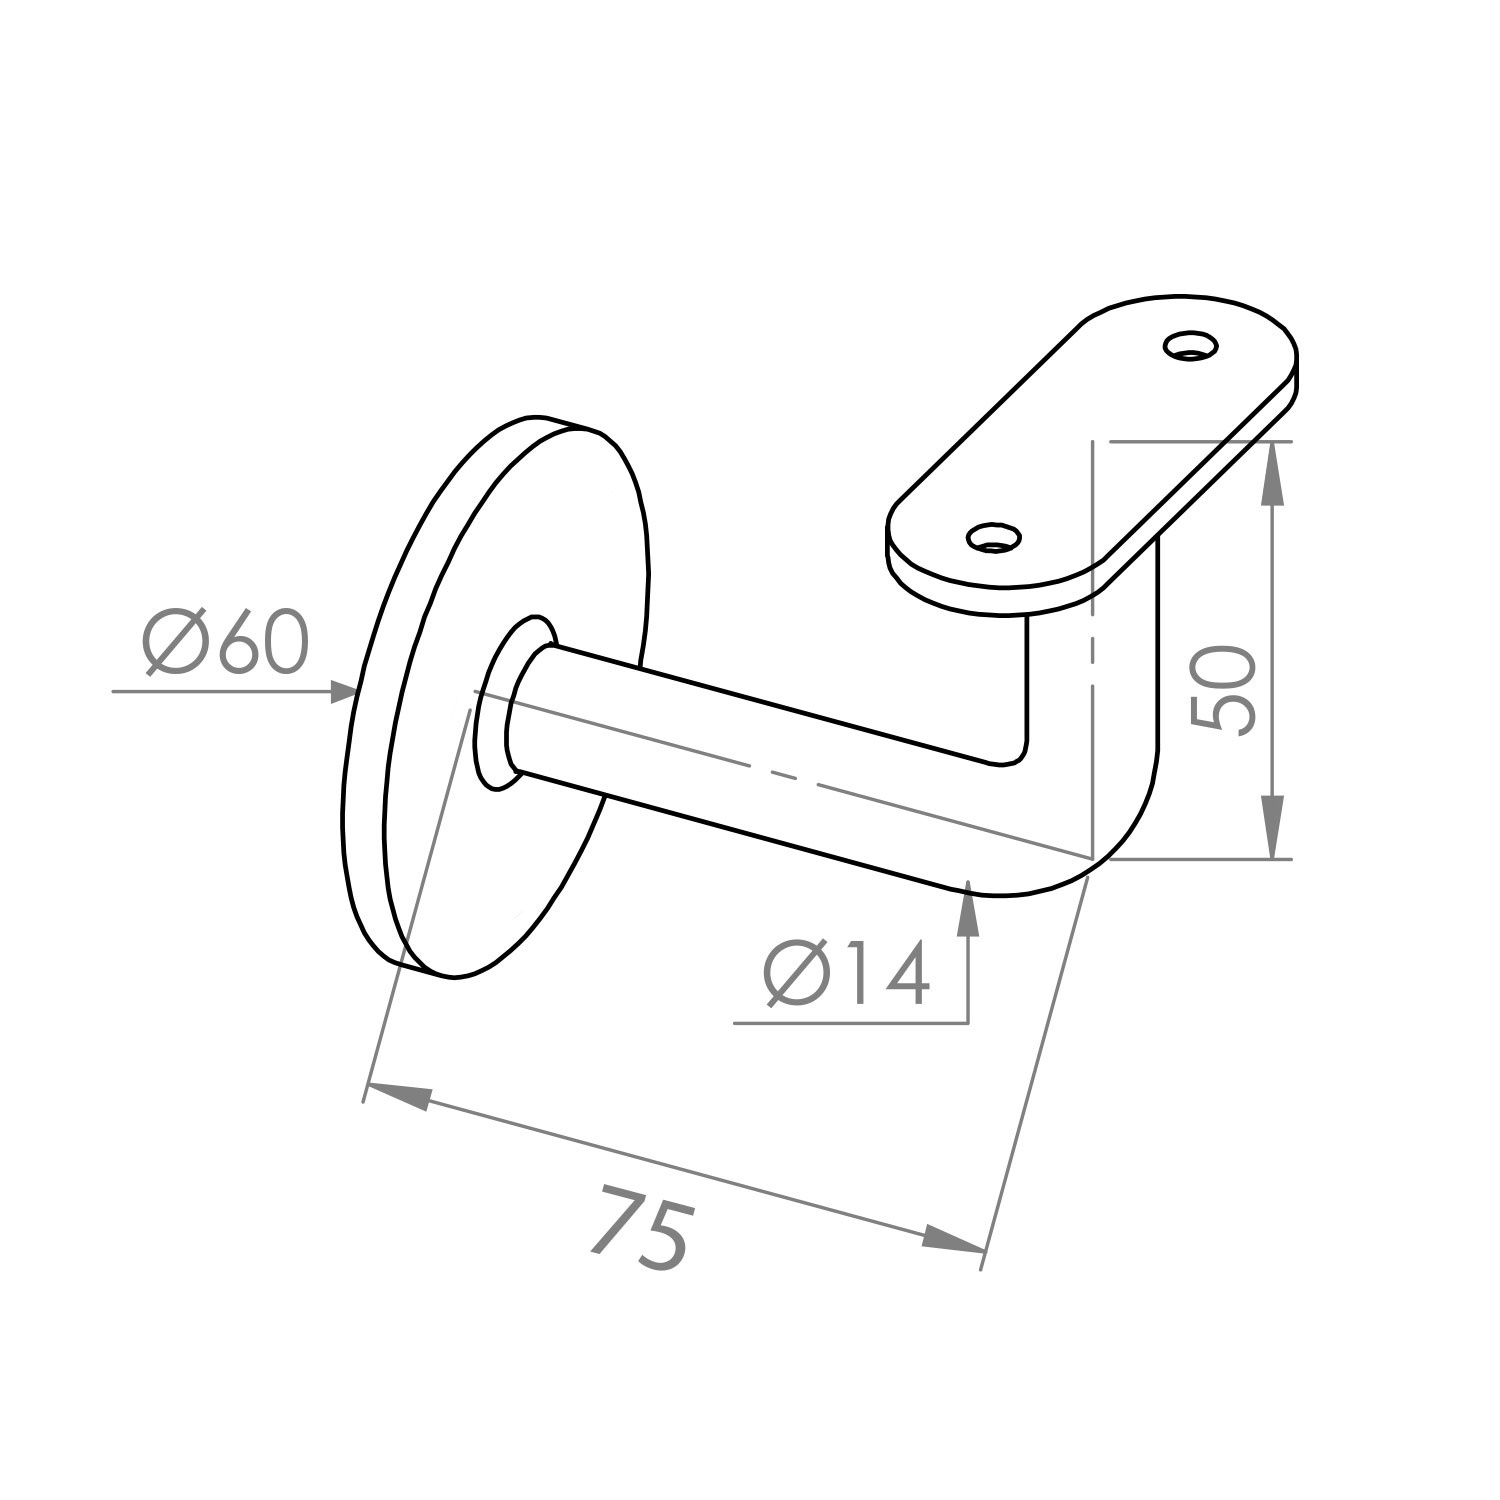  Handlauf Hammerschlag Optik beschichtet viereckig 40x40  Modell 3 - Eckige Treppengeländer - Treppenhandlauf mit grauem Hammerschlag Pulverbeschichtung